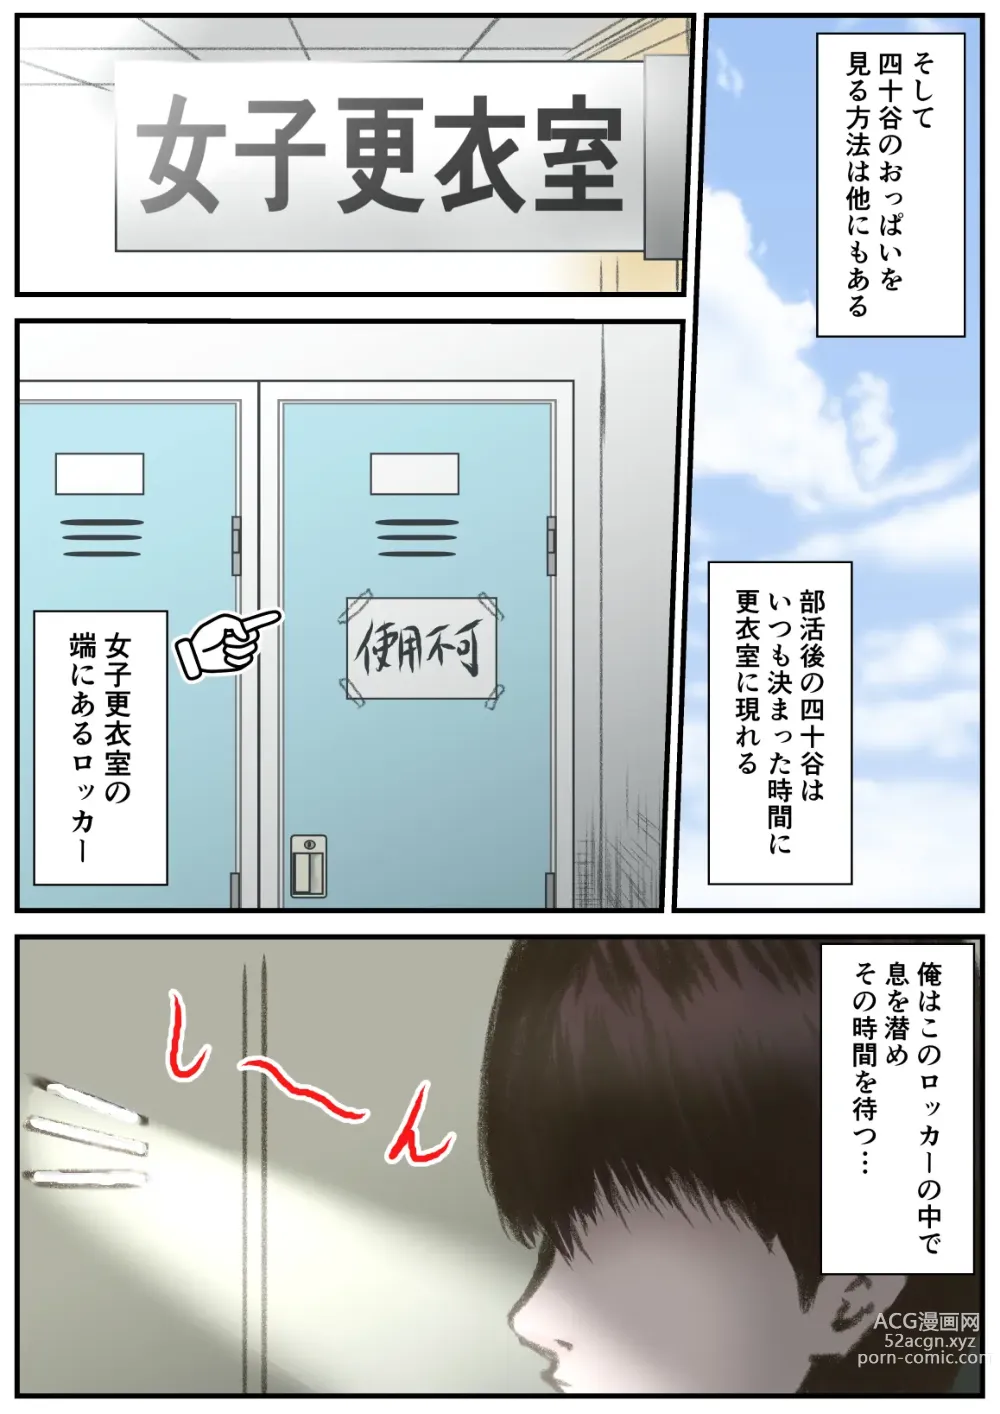 Page 4 of doujinshi Very Short Boyish